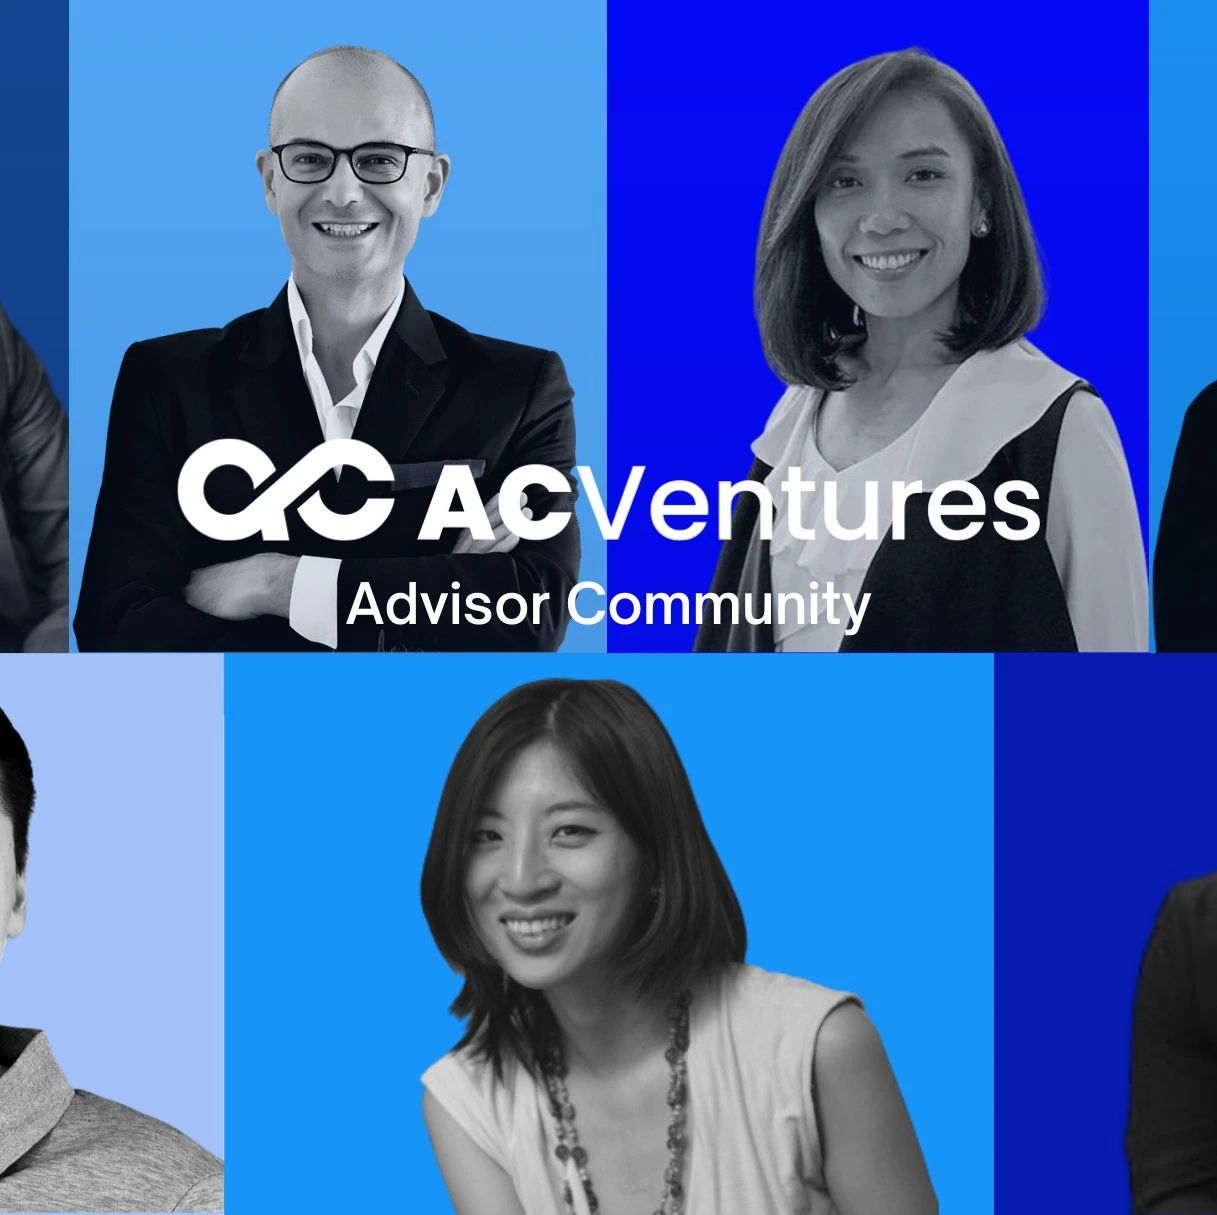 印尼风投公司AC Ventures推出顾问社区